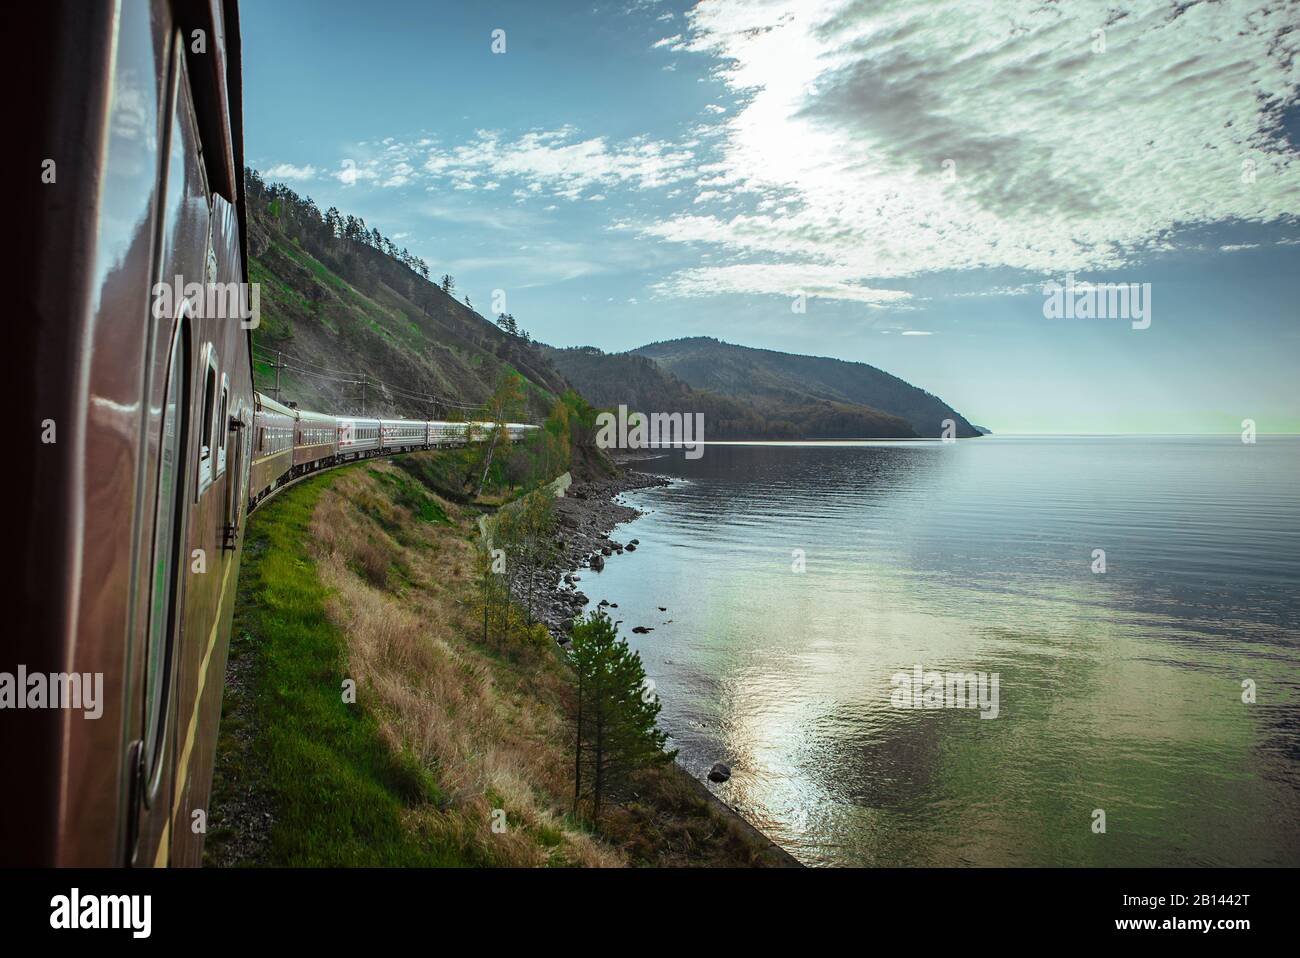 Ferrocarril Transiberiano en el lago Baikal, en Siberia, Rusia Foto de stock